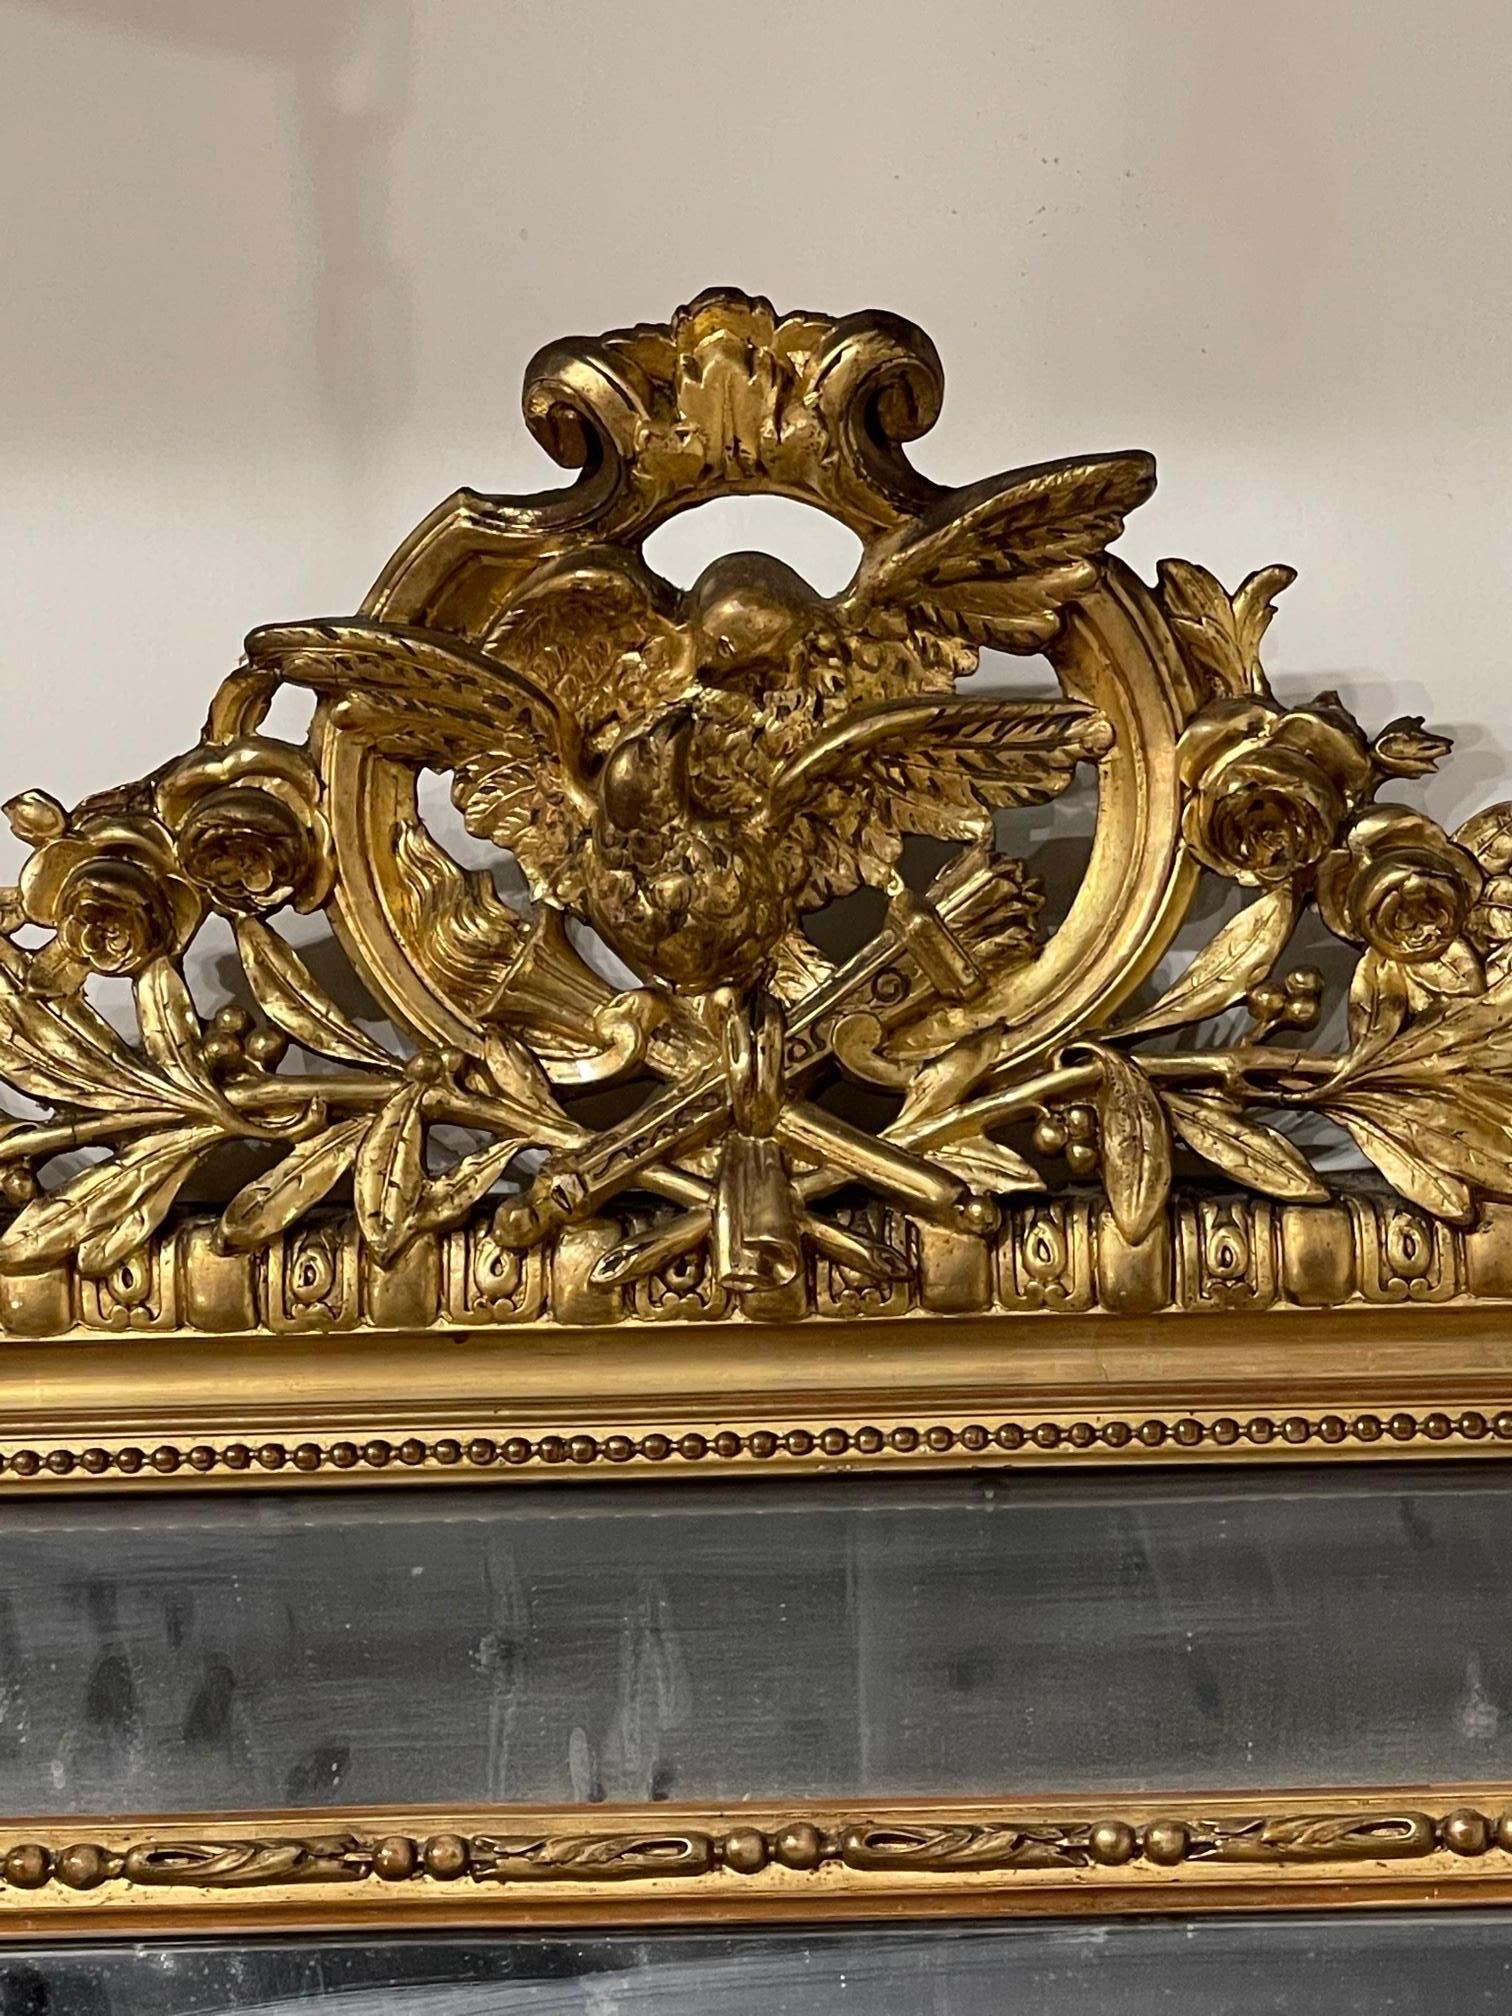 Grand miroir de style Louis XVI français du 19ème siècle, sculpté et doré, Circa 1870. Le verre sera nettoyé avant d'être envoyé. C'est une belle pièce.